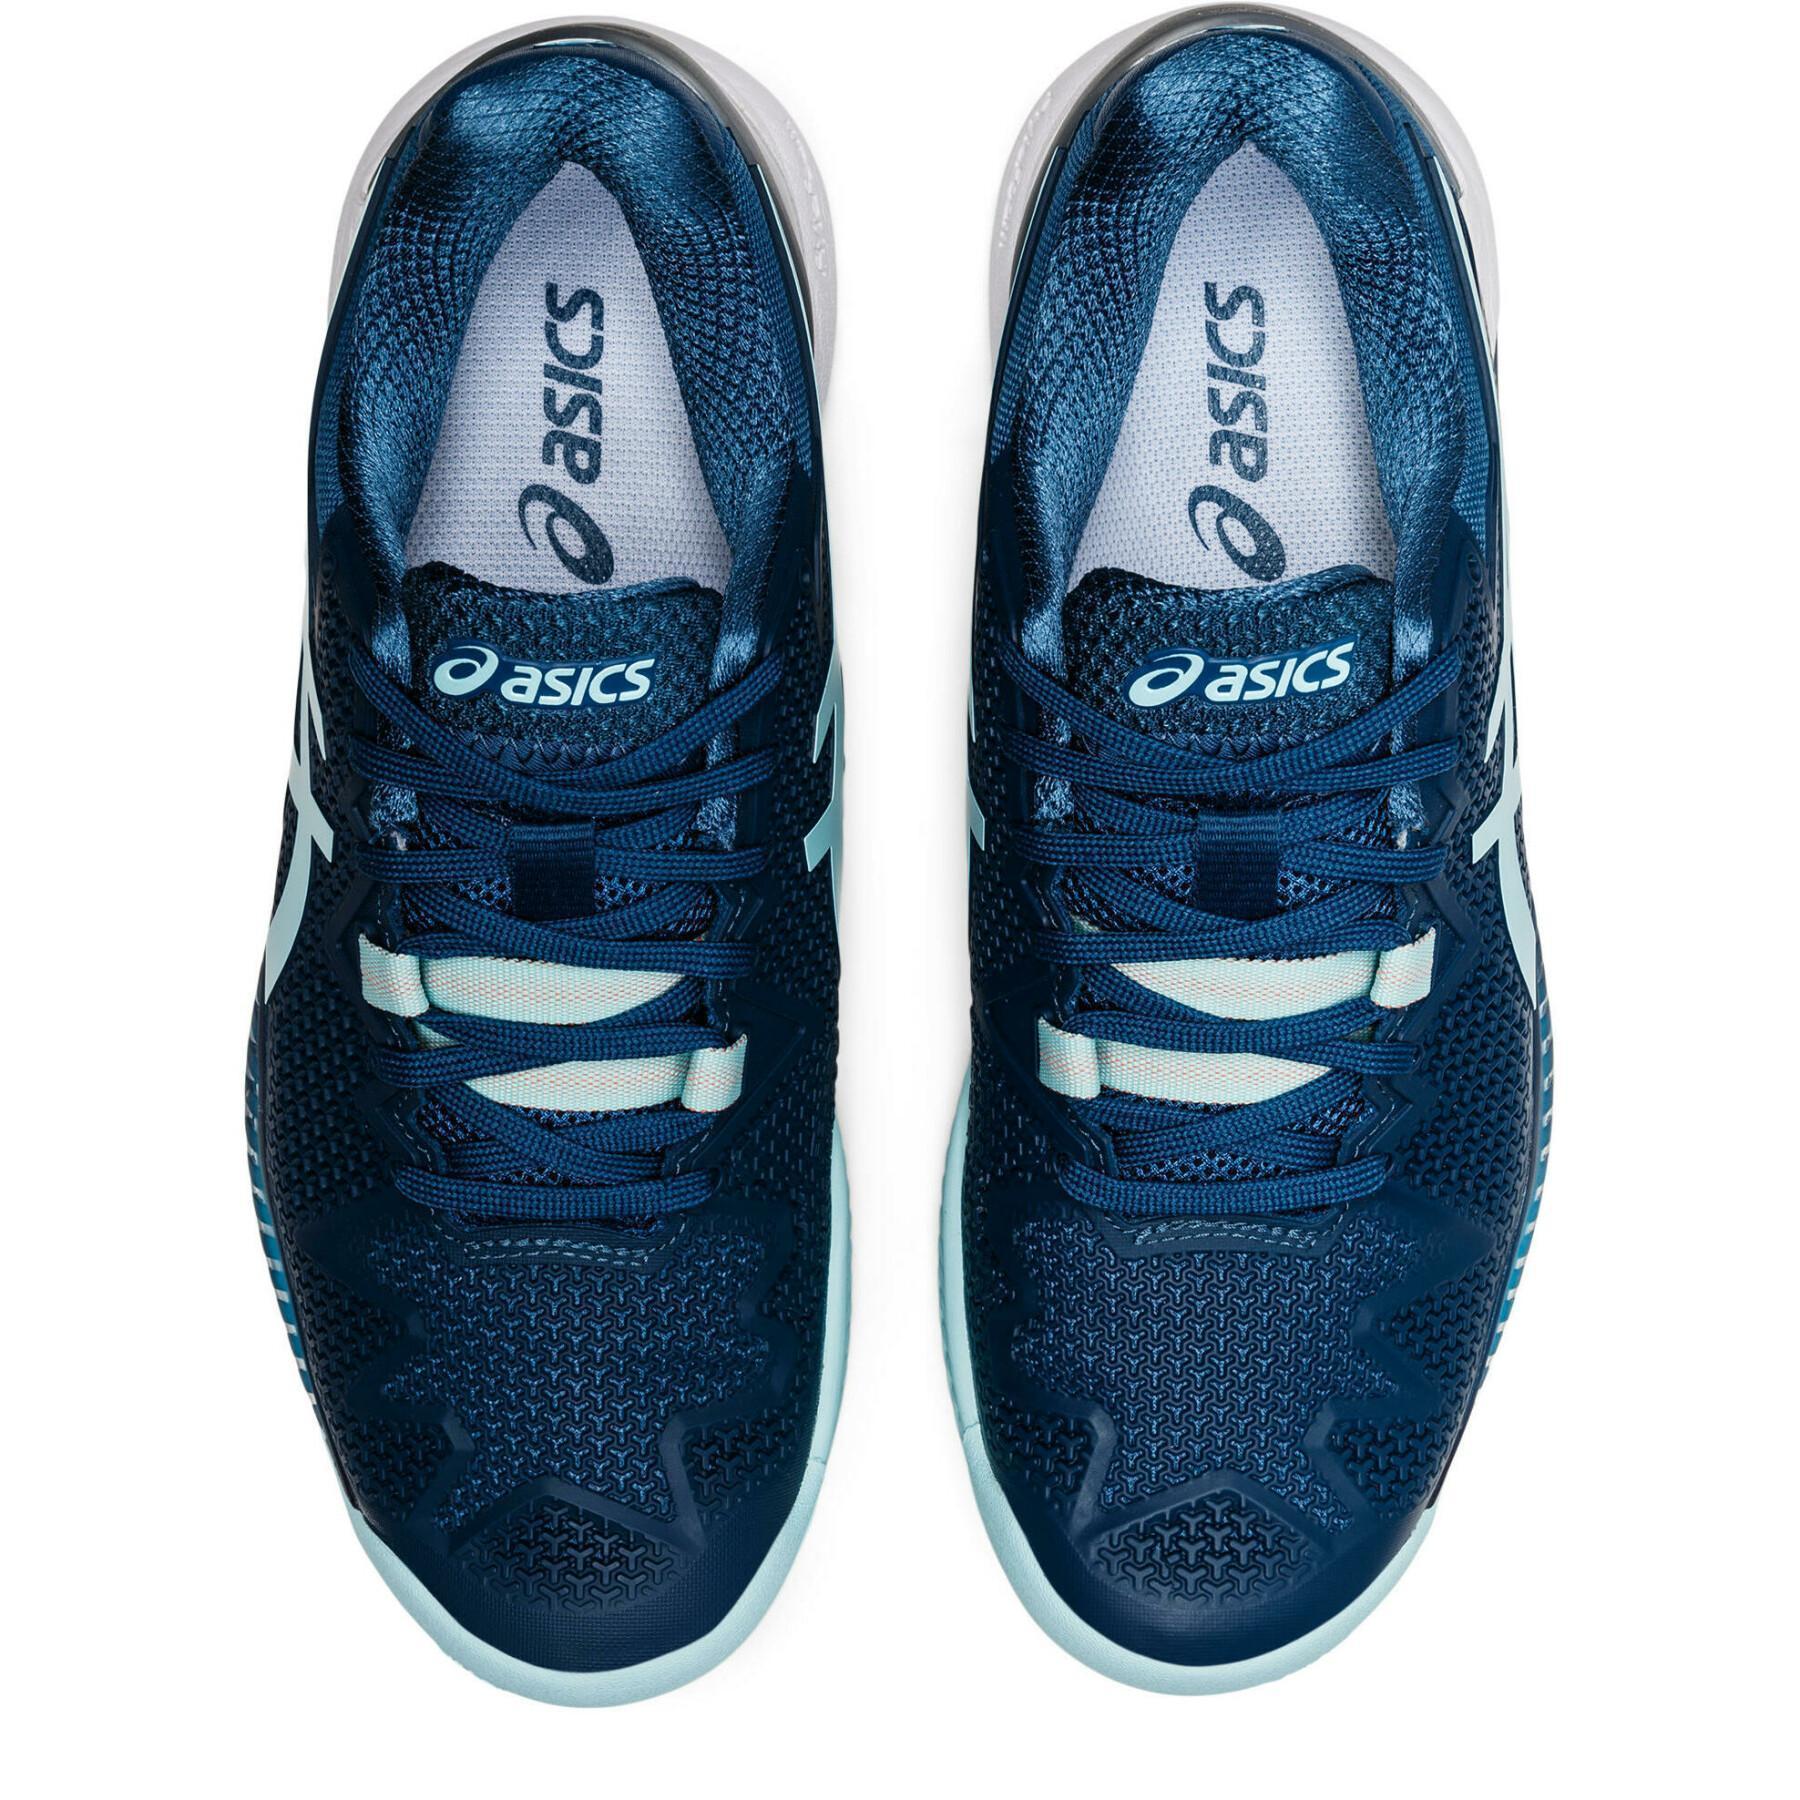 Chaussures de tennis femme Asics Gel-Resolution 8 Clay